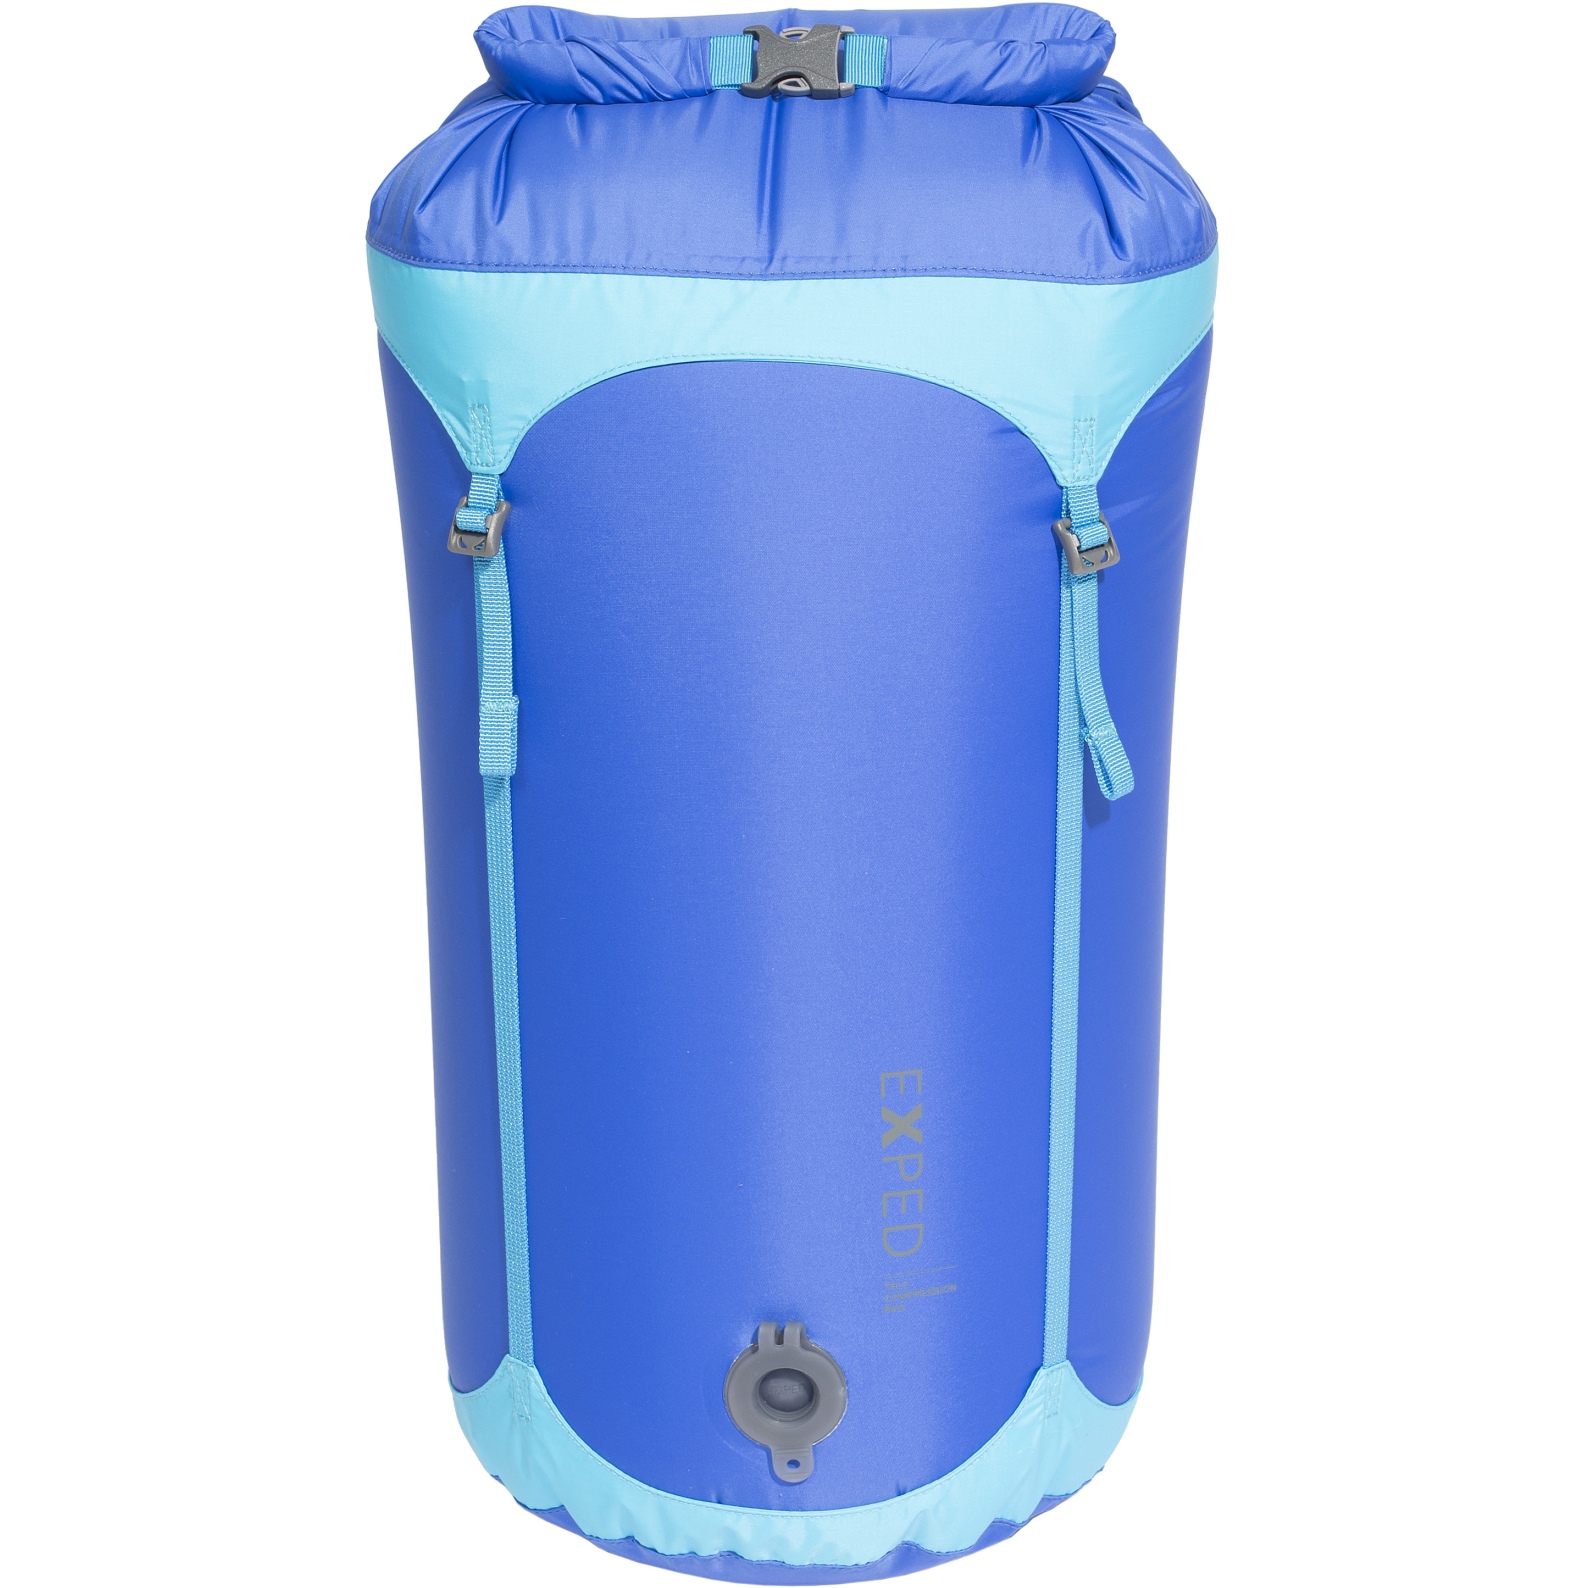 Produktbild von Exped Waterproof Telecompression Bag - Packsack - M - blau